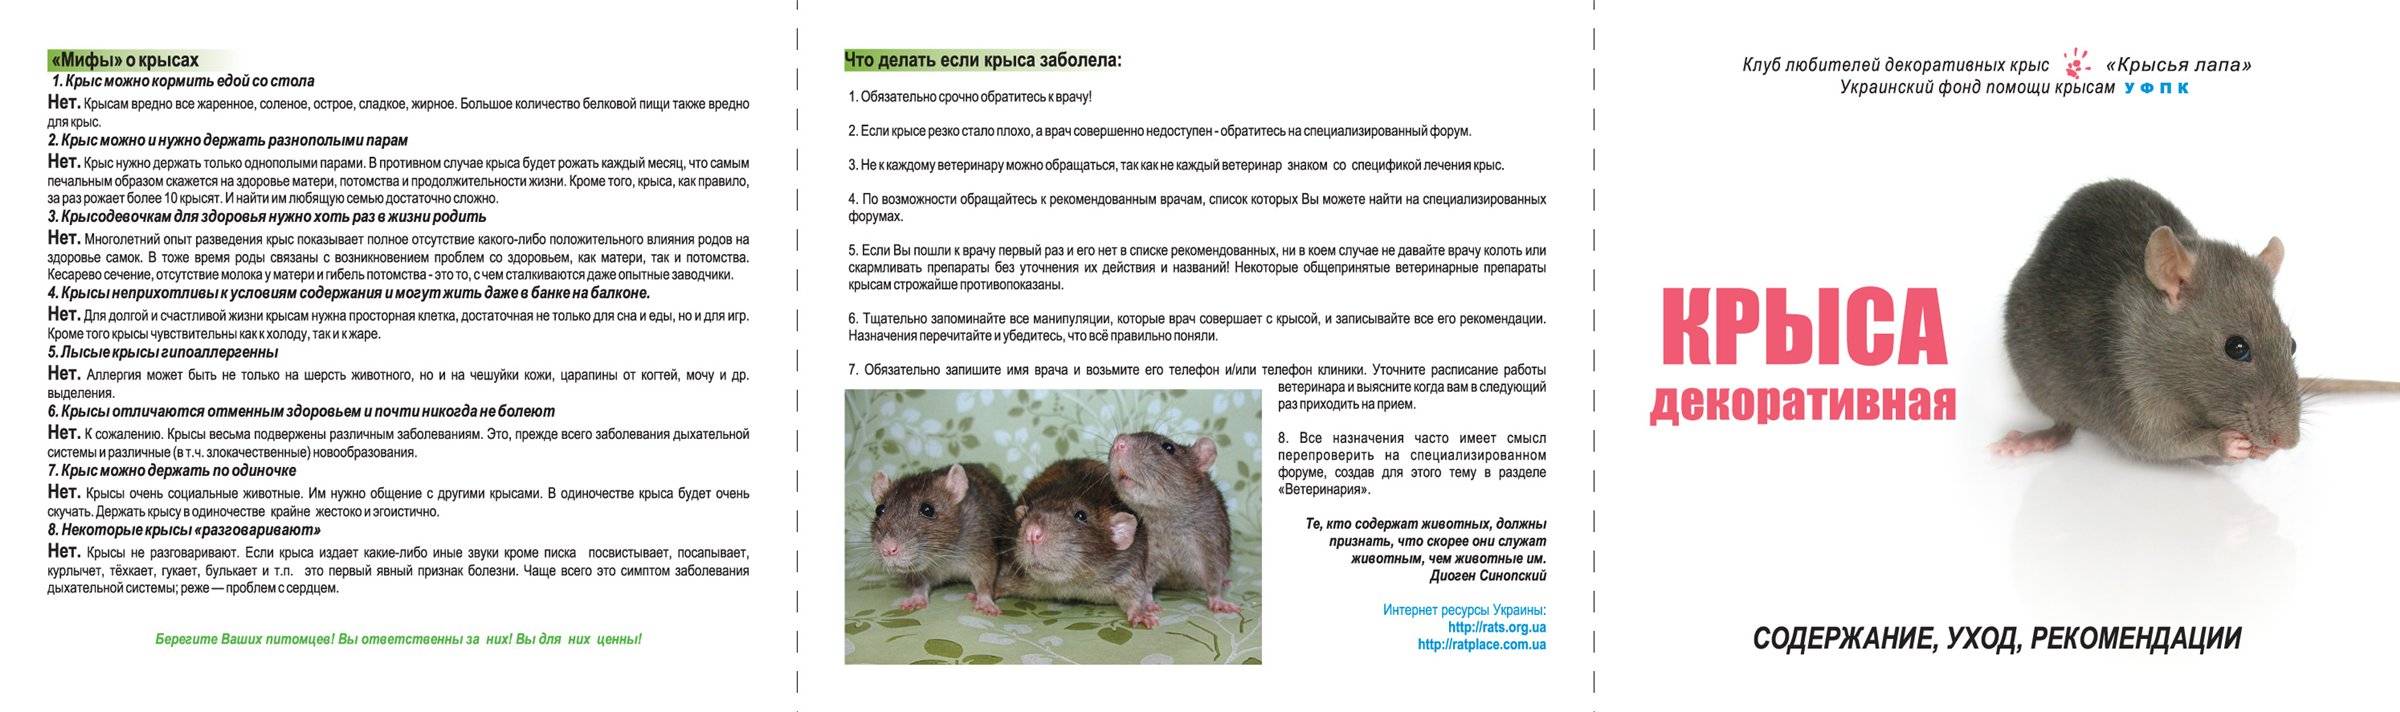 25 фактов о крысах. "умные крысы" (док. фильм)